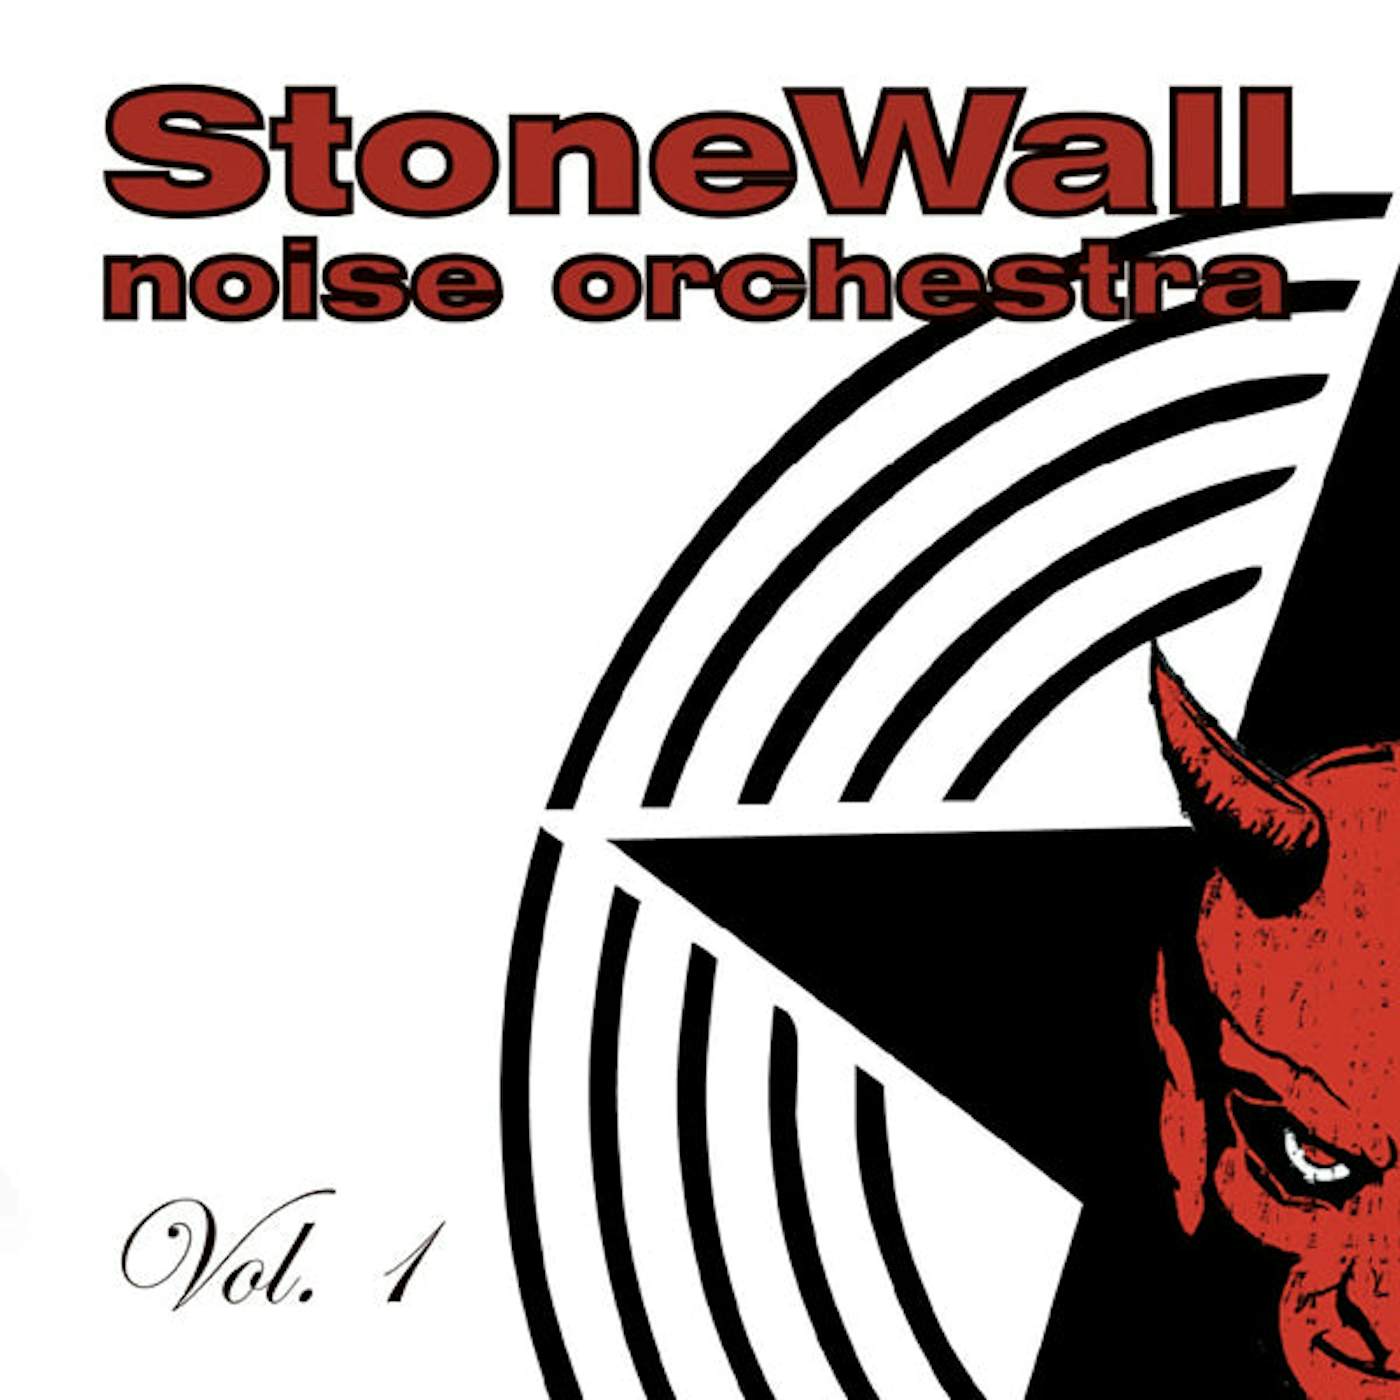 Stonewall Noise Orchestra LP - Vol. 1 (Vinyl)